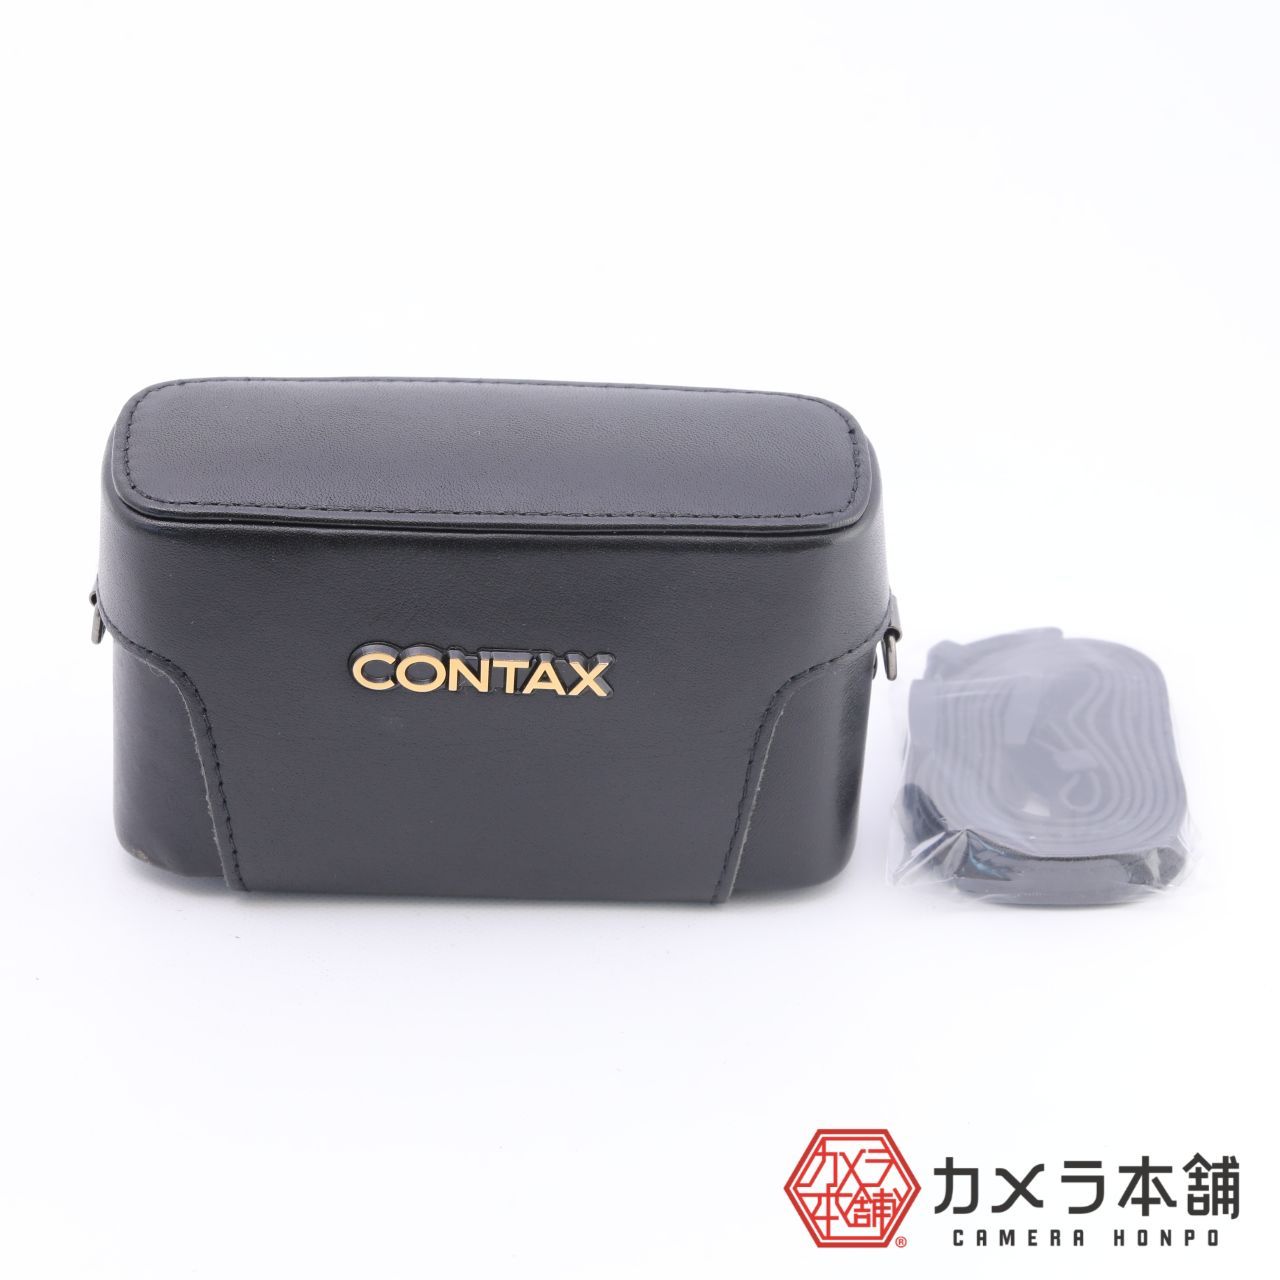 CONTAX コンタックス T2 セミハードケース 中古純正品 - メルカリ